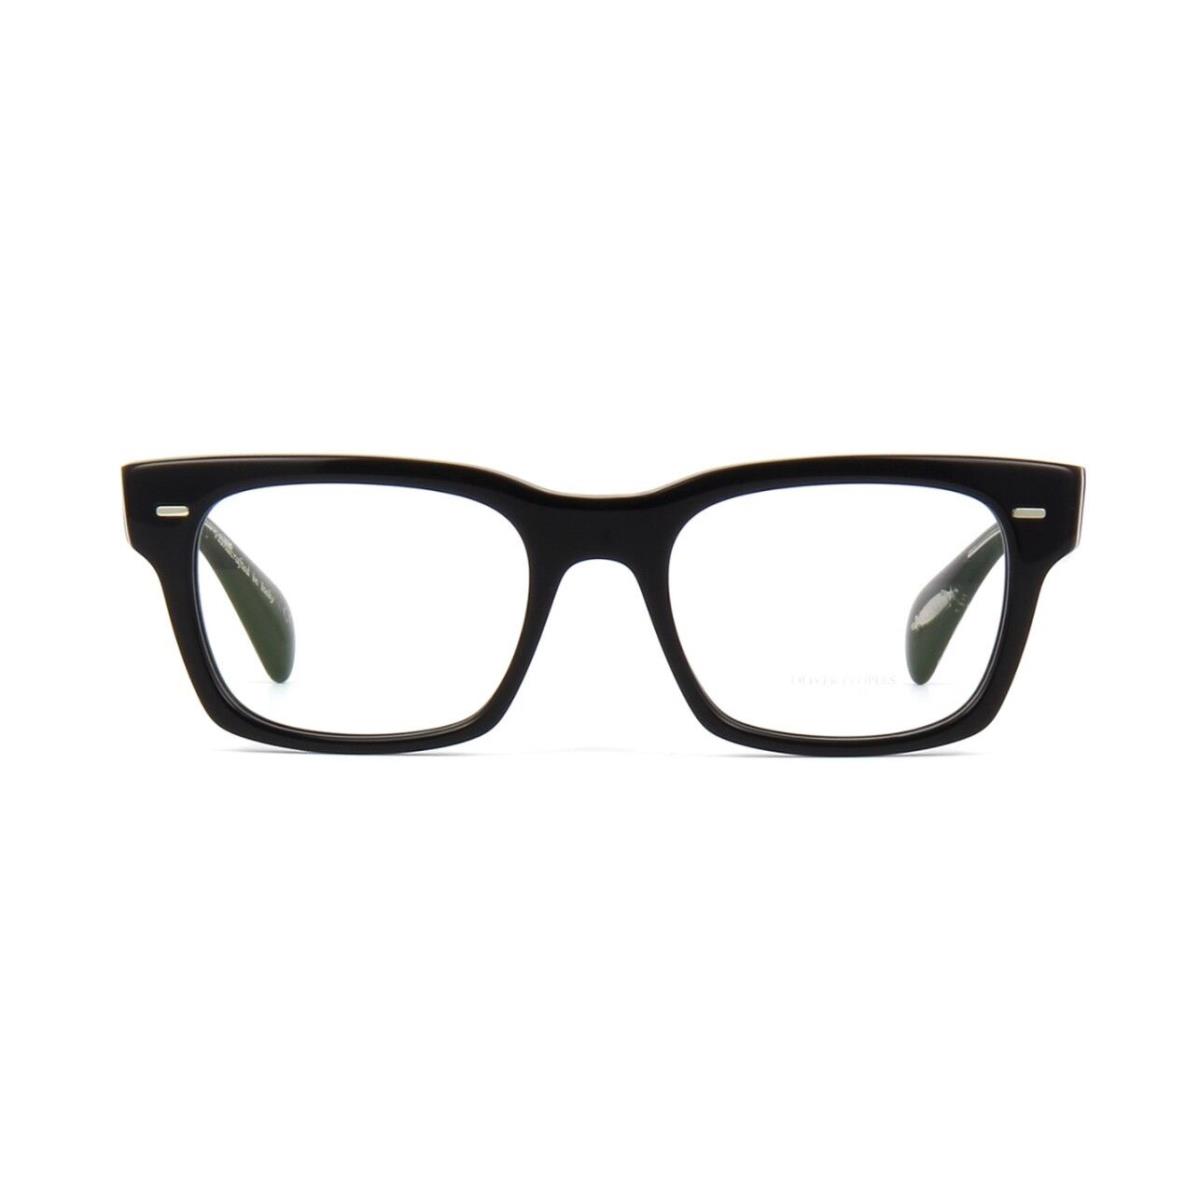 Oliver Peoples eyeglasses  - Black Frame 0